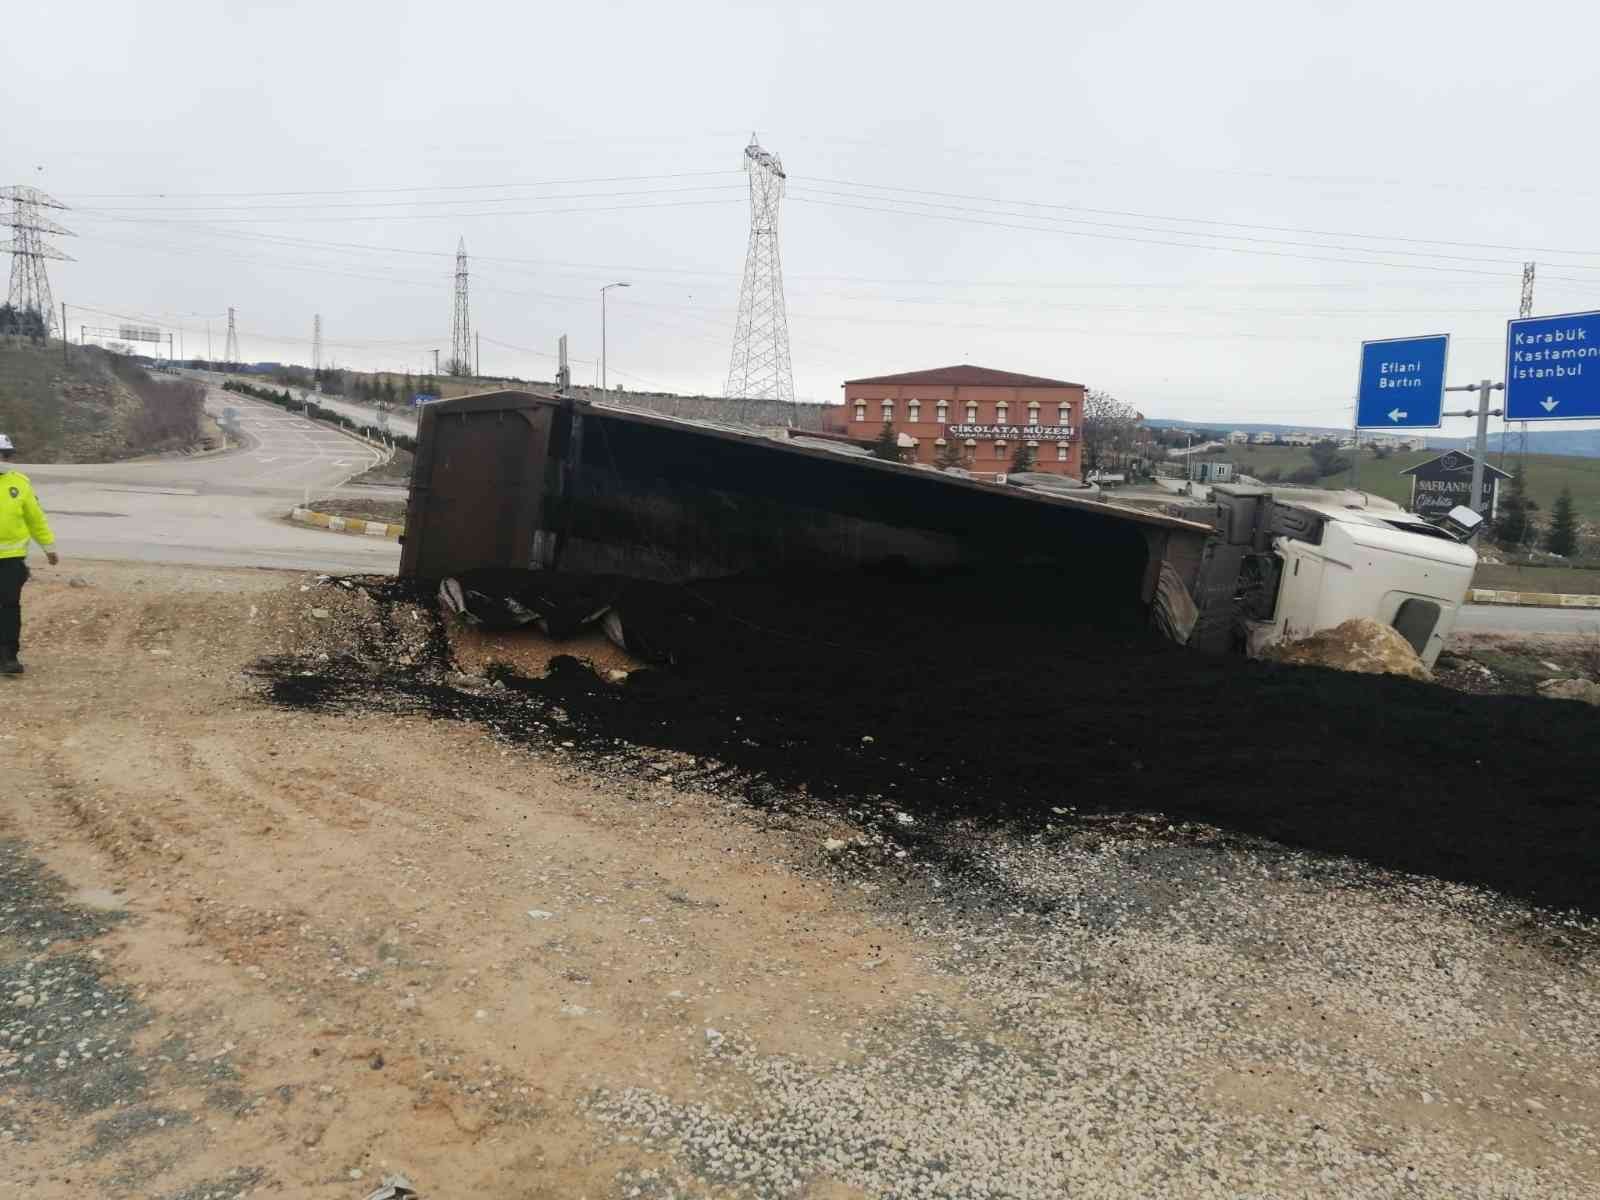 Karabük’te asfalt yüklü tır devrildi: 1 yaralı #karabuk